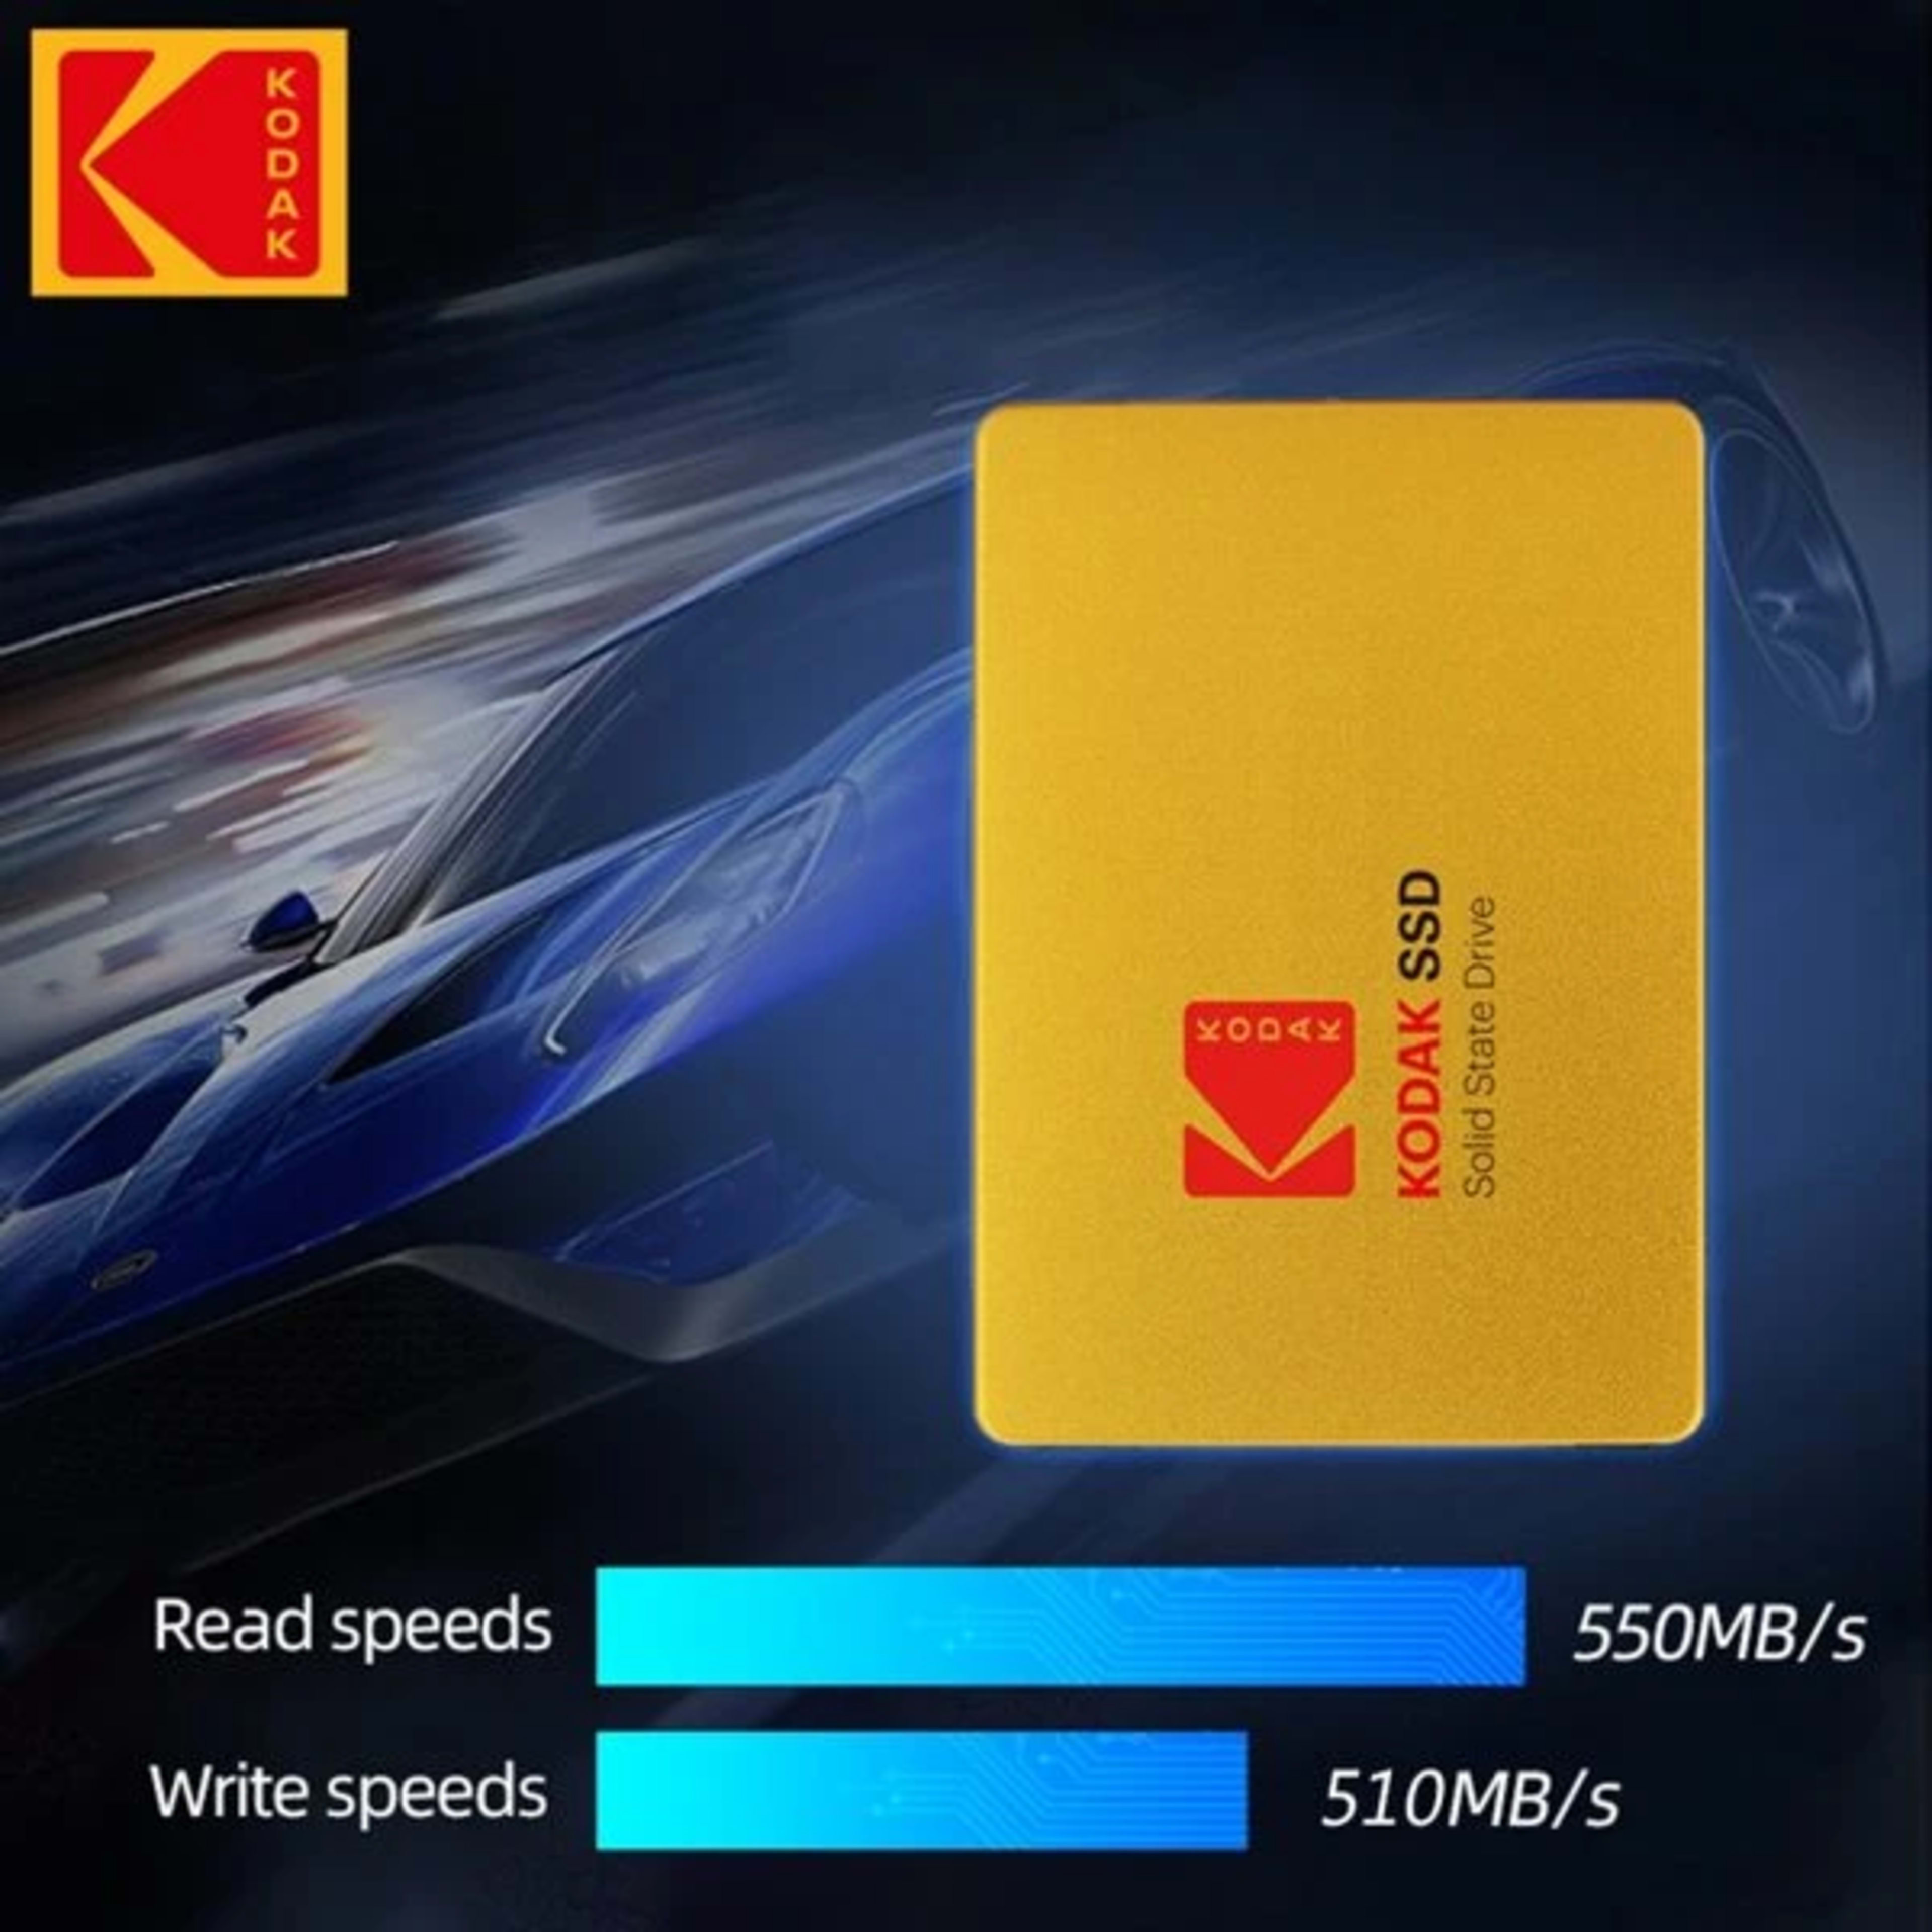 KODAK SSD X100 2.5 INCH SATA3 480GB Gold Disk HDD SATA III